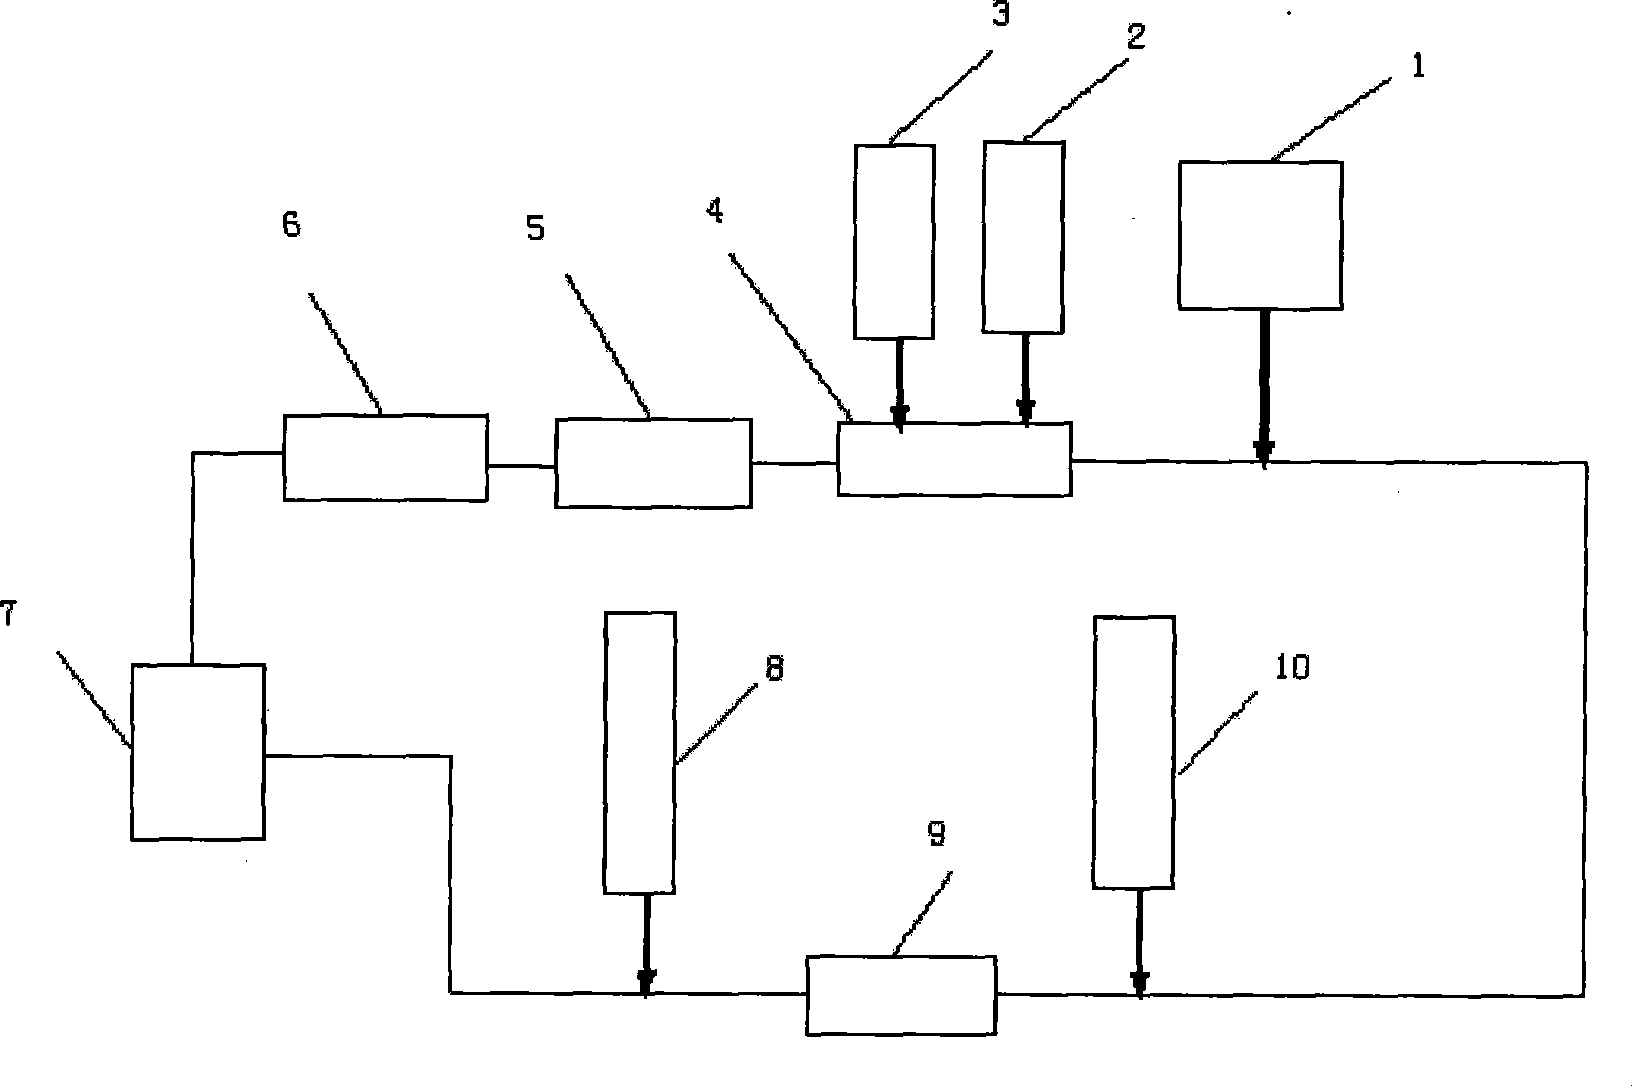 Foam cyclic utilization method used for under balance drilling